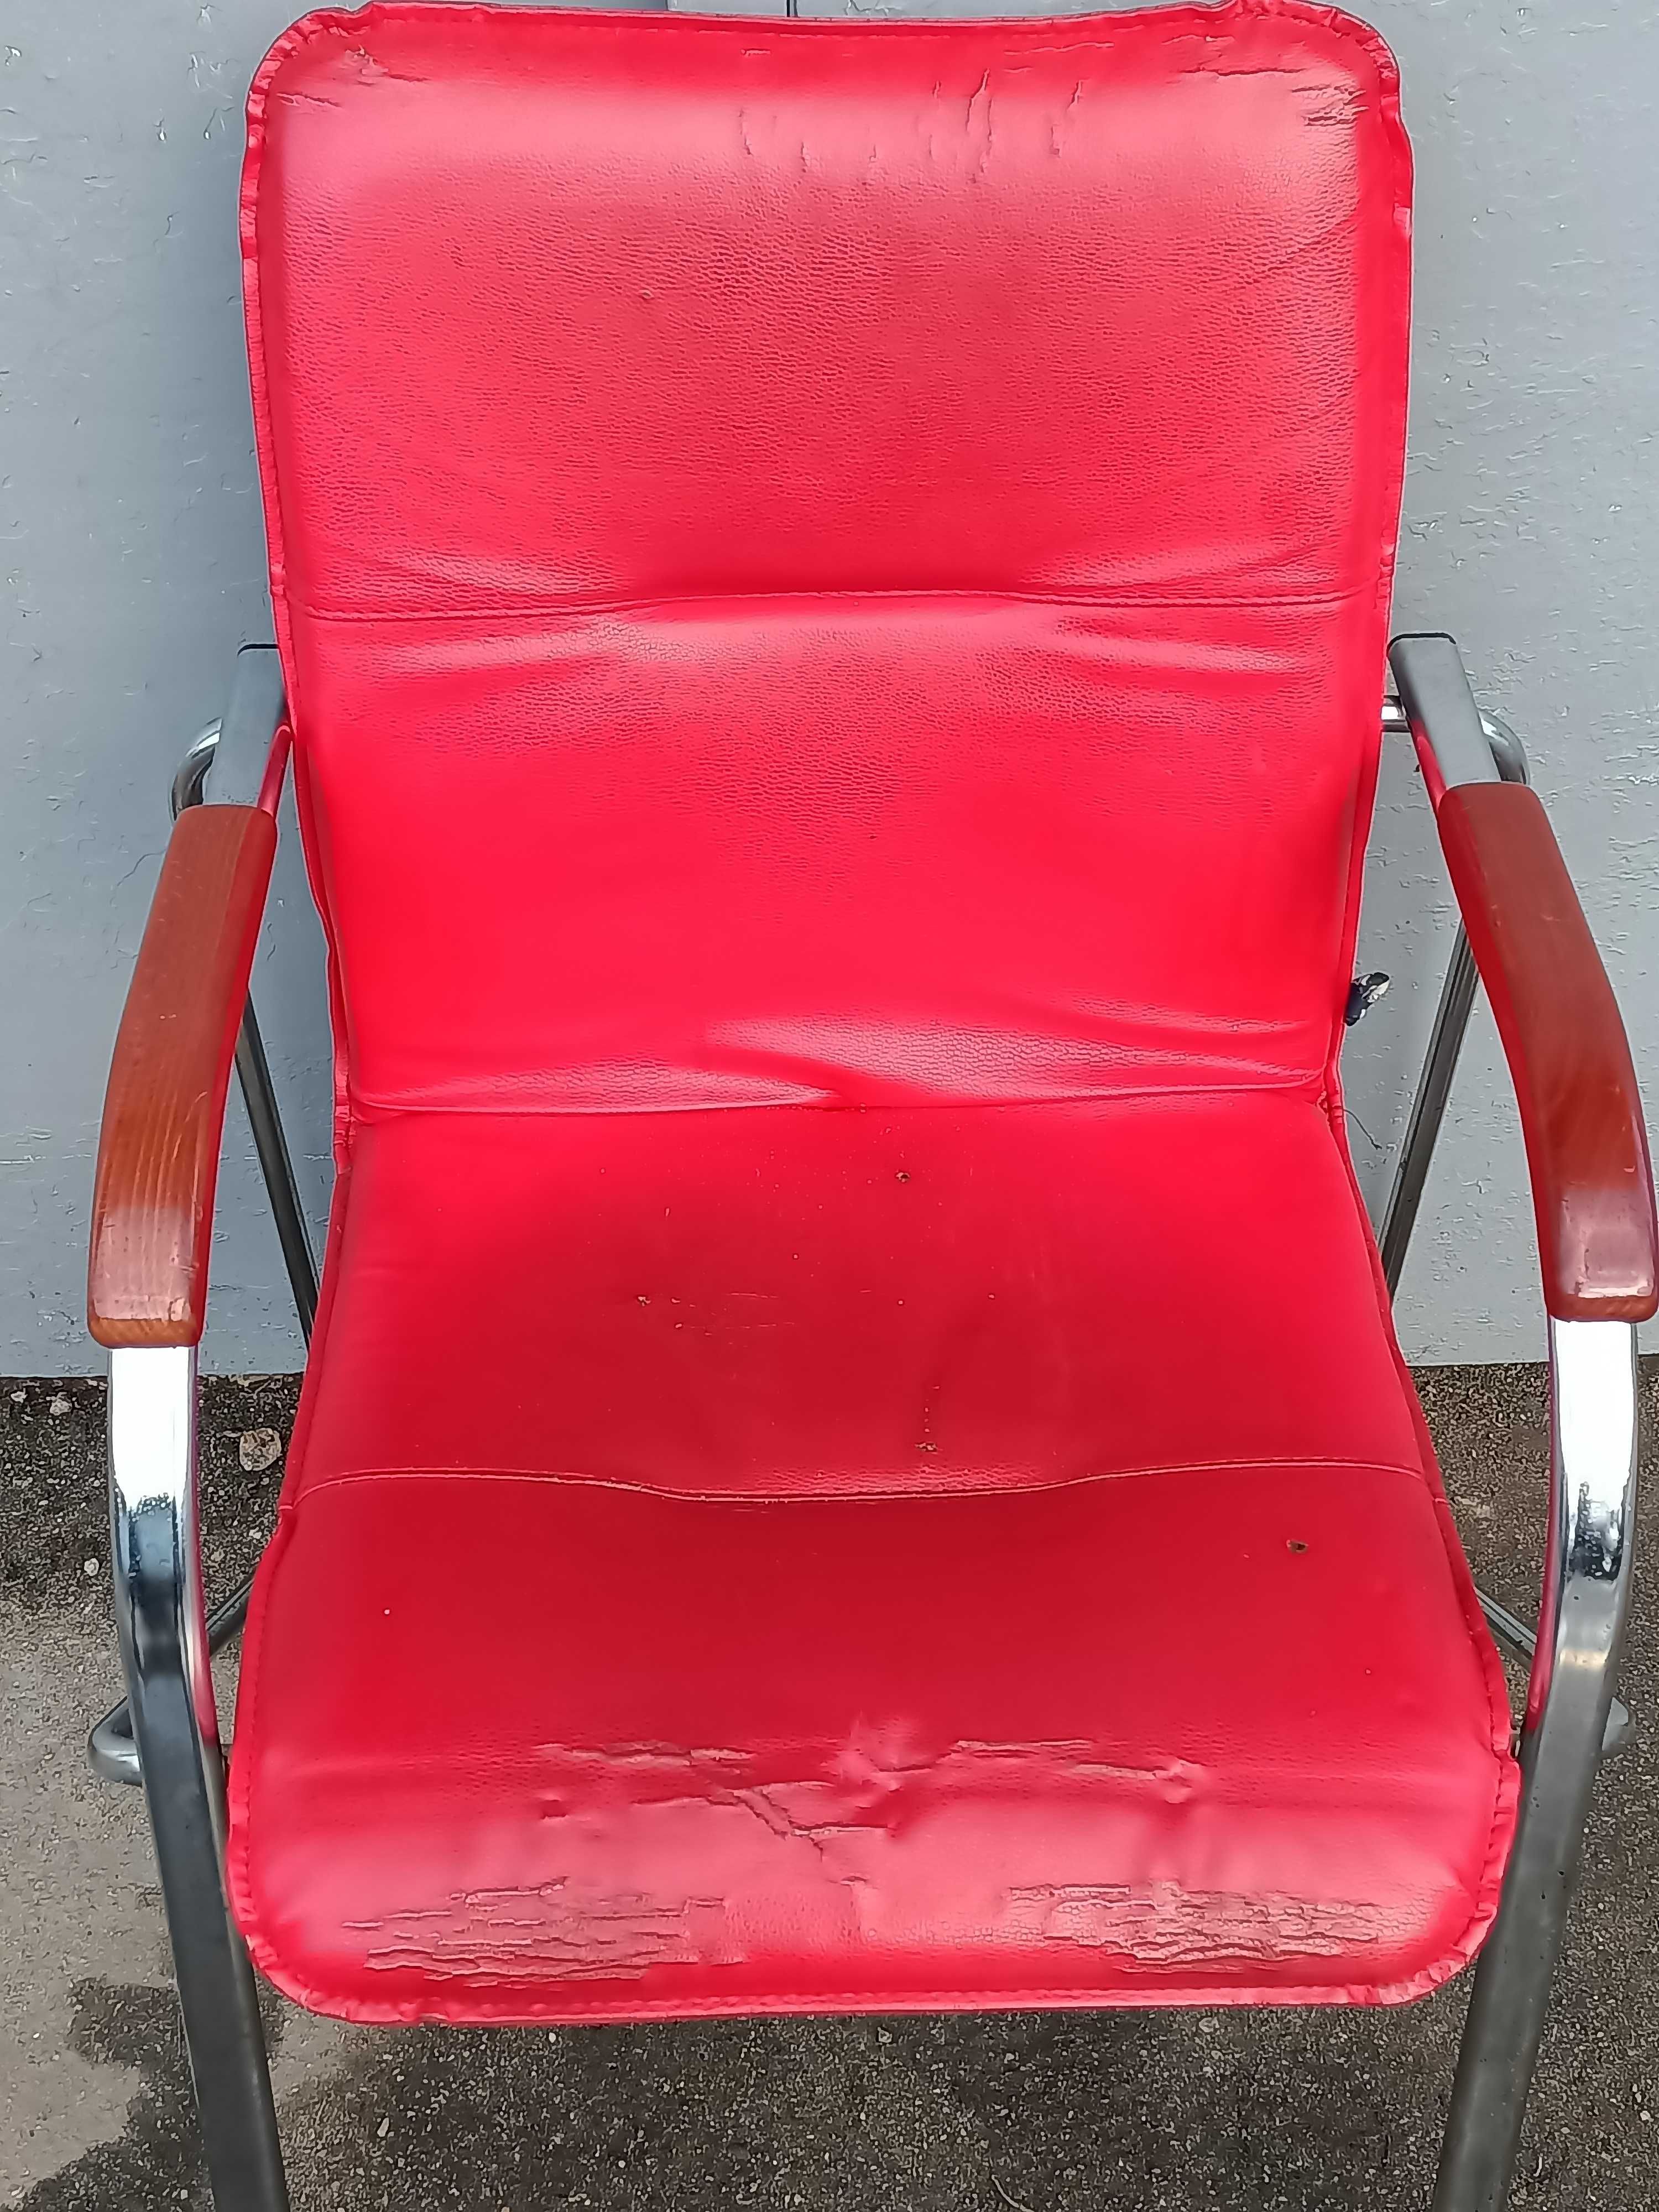 Кресла Samba /стулья с подлокотниками на металлическом каркасе